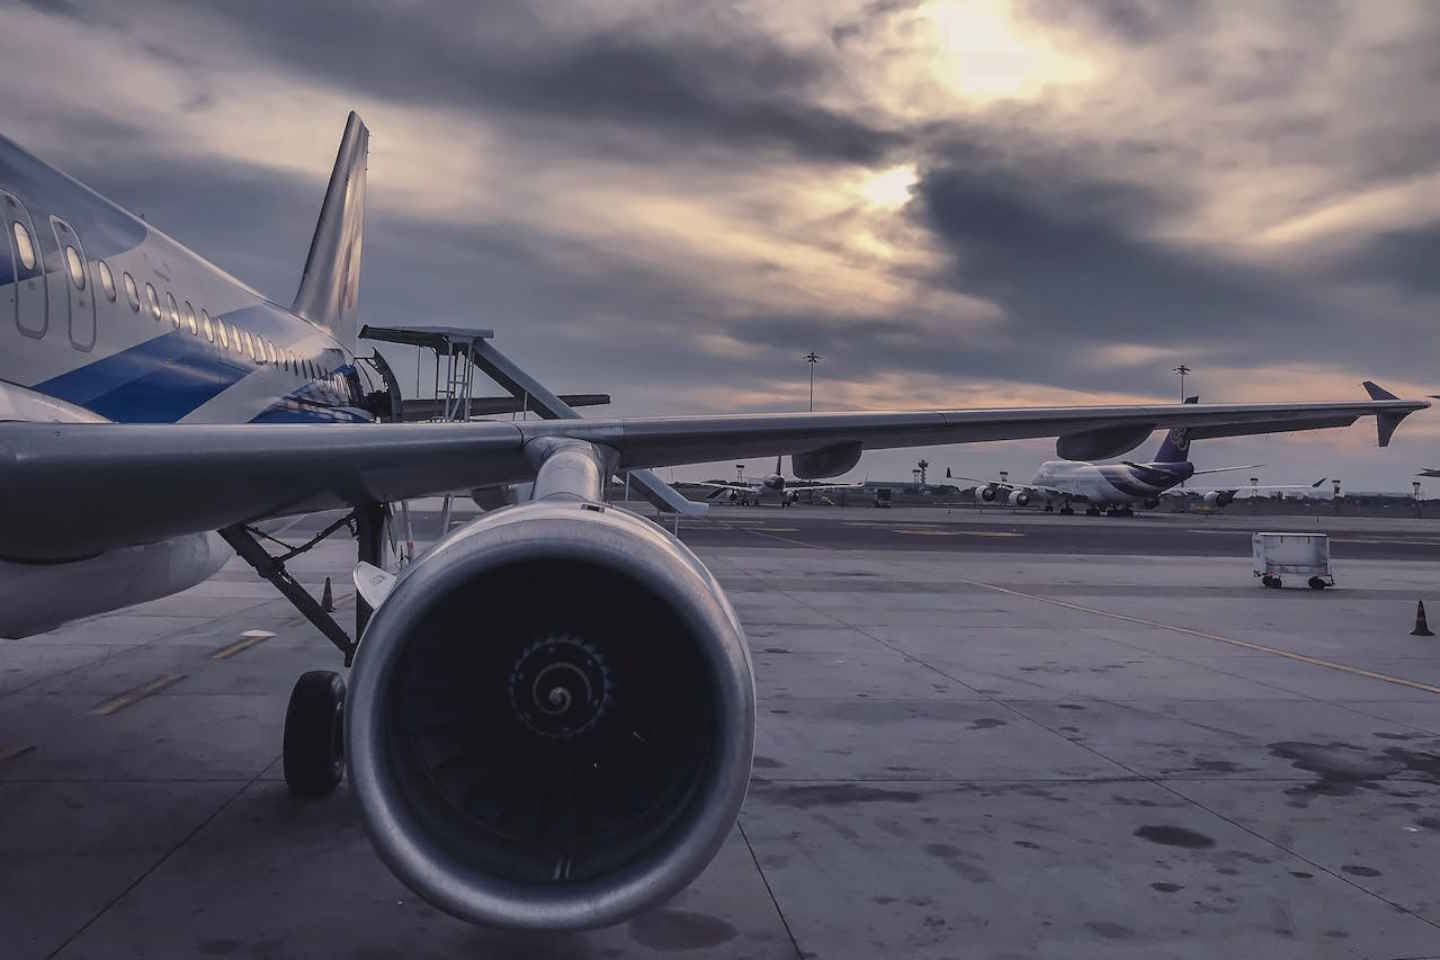 Новости Казахстана / Экономика в Казахстане / Авиакомпания Air Astana оштрафована почти на 900 млн тенге